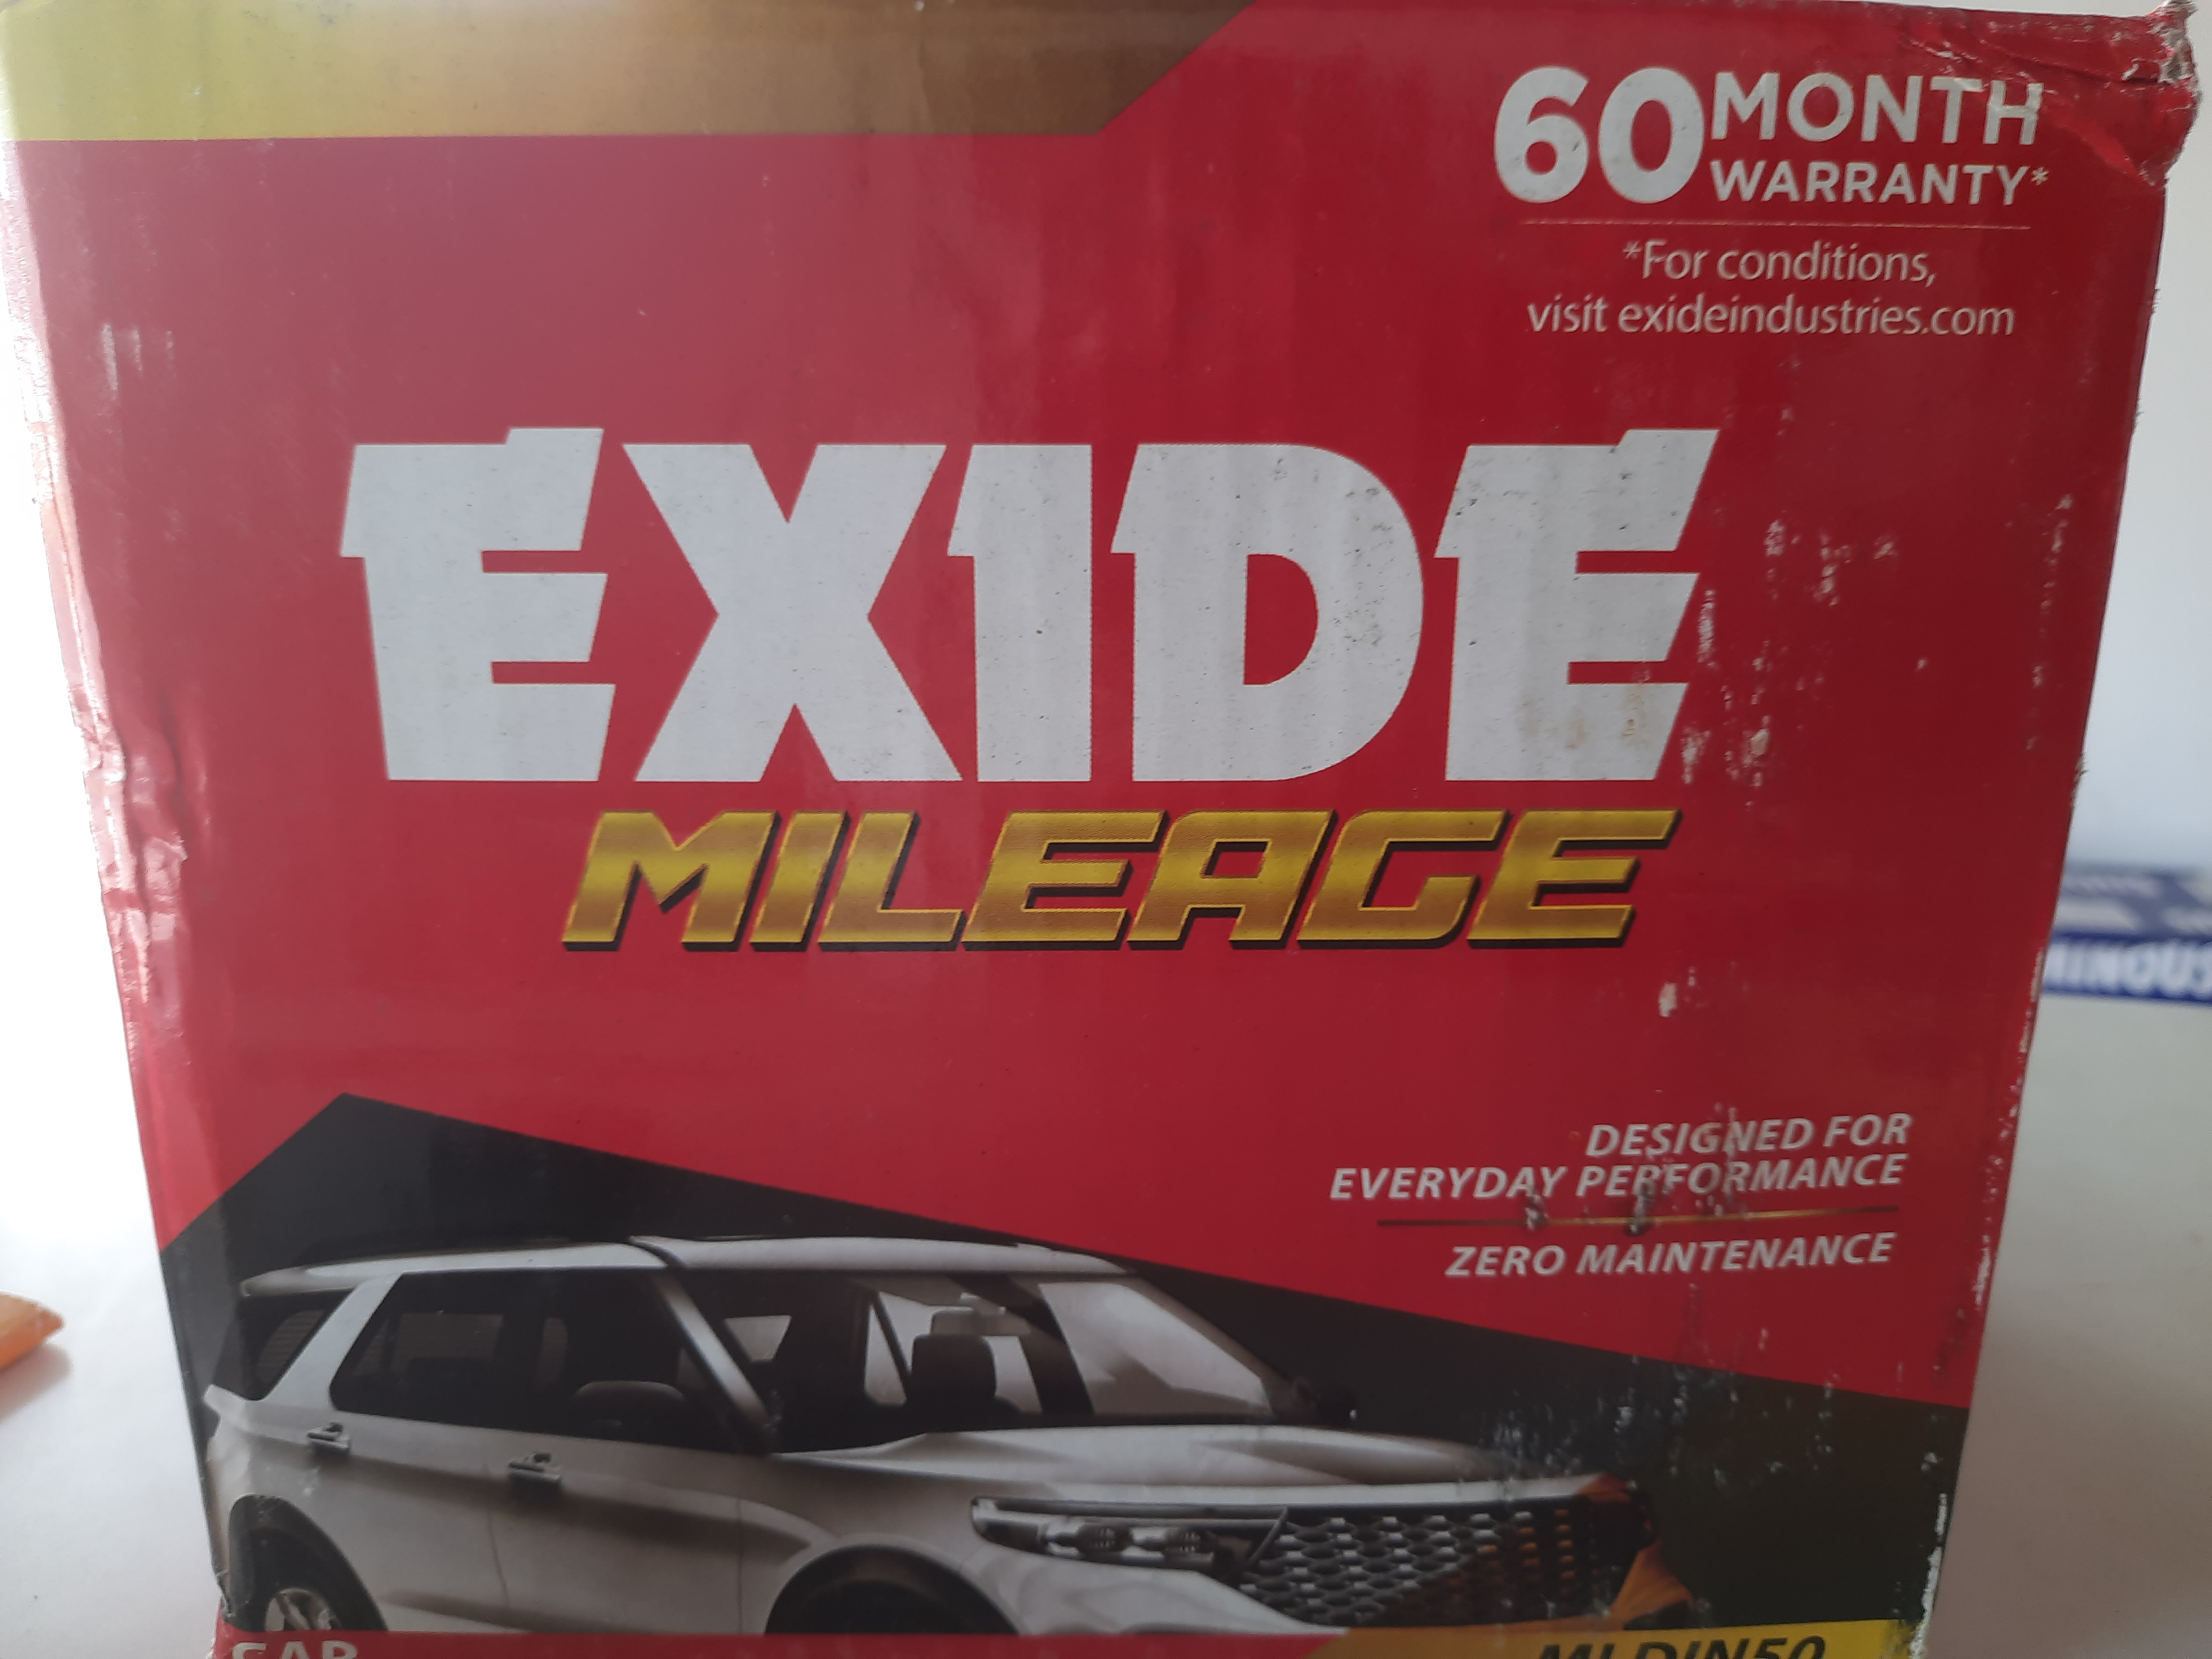 Exide car battery image